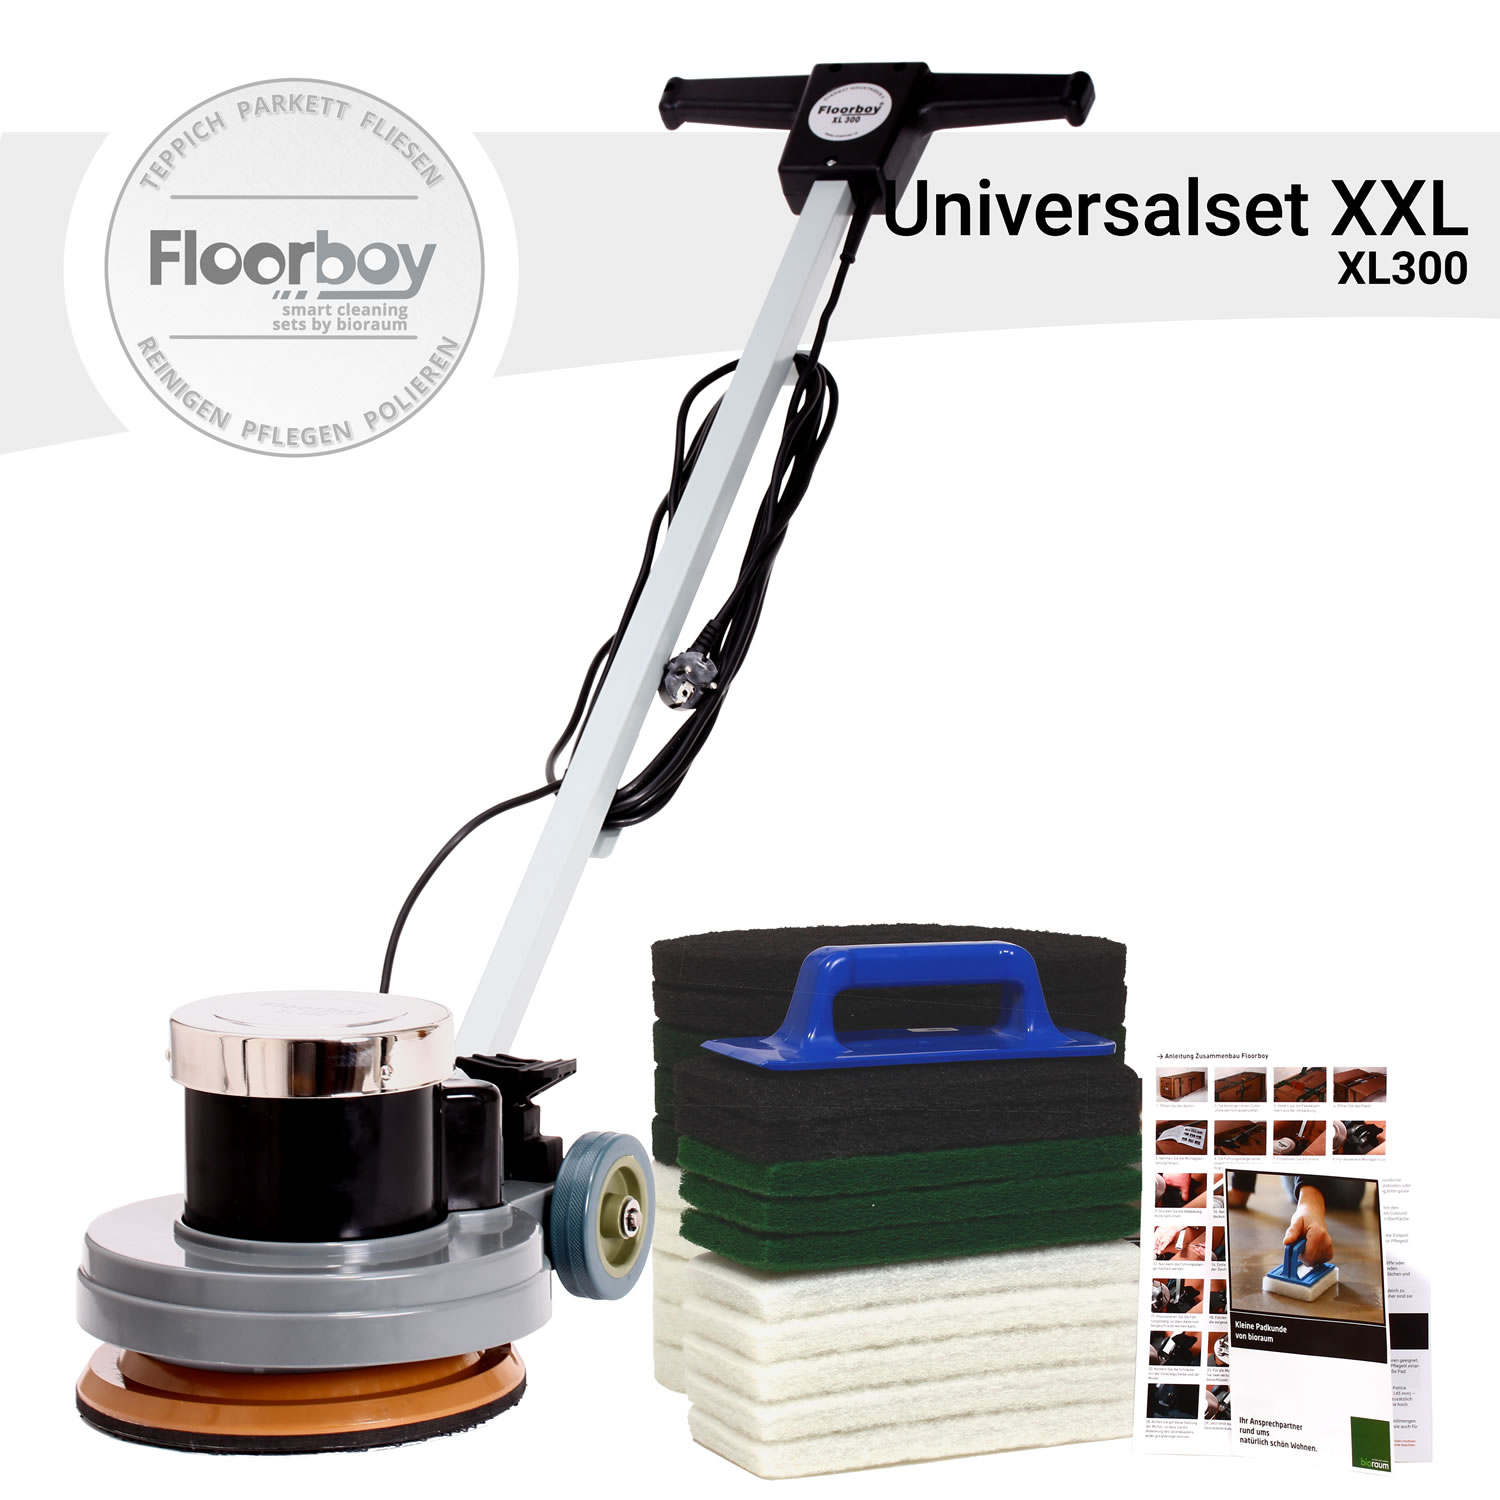 Floorboy XL300 Universal Set XXL